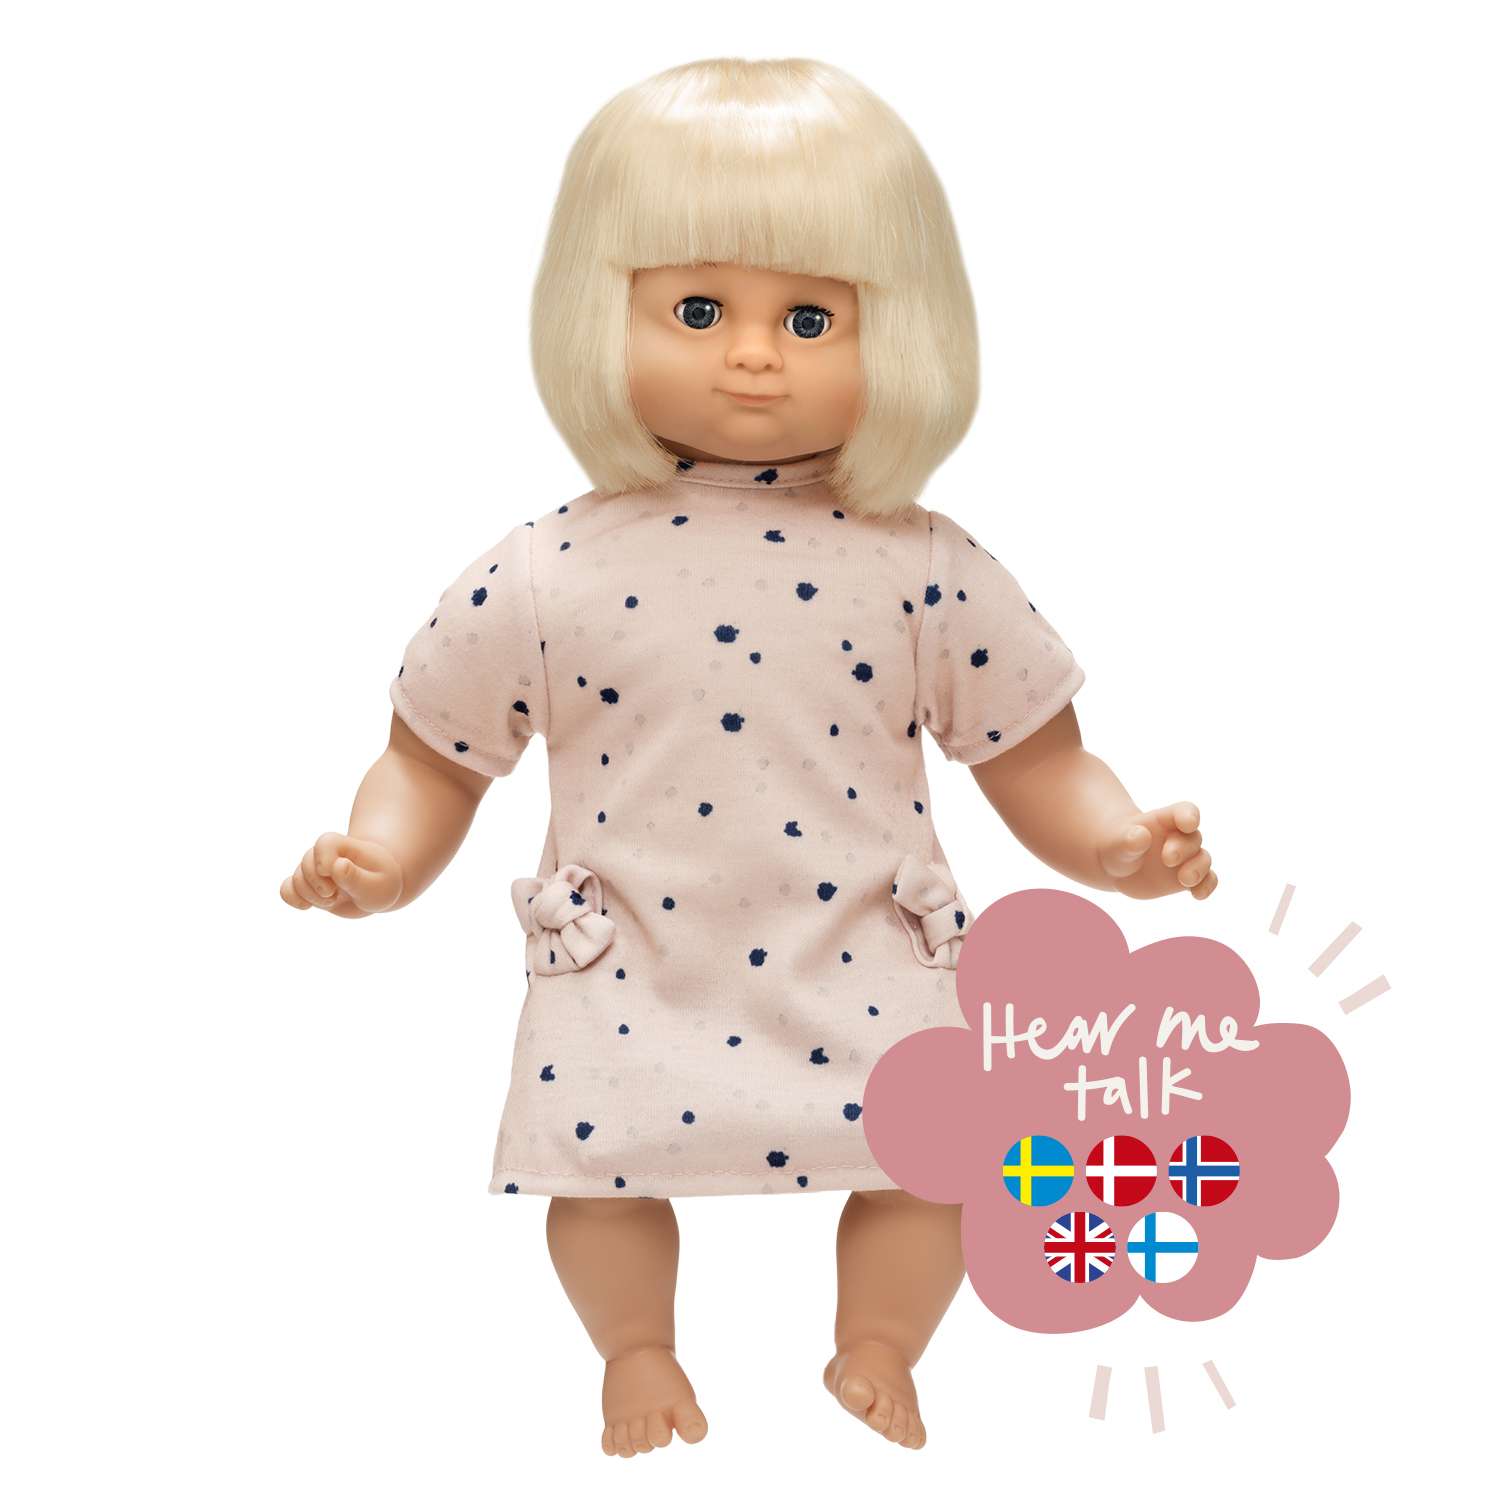 Skrållan - Lillian talking doll, Blond - 36 cm